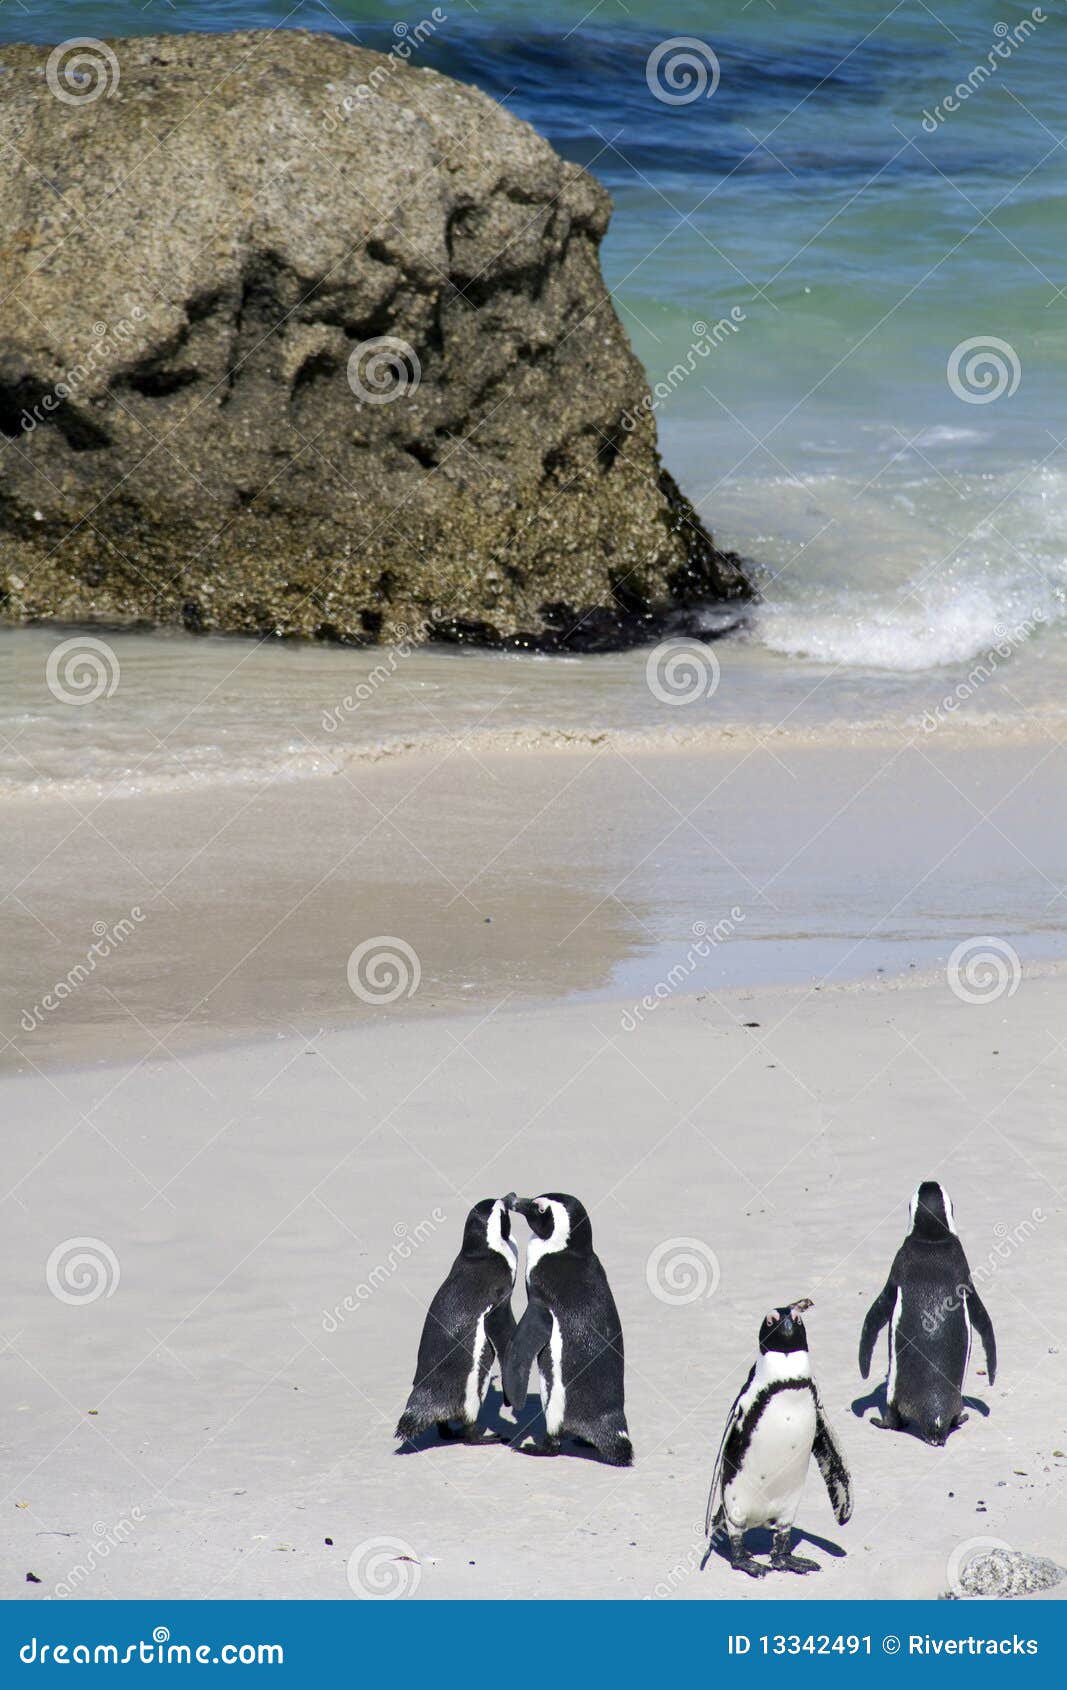 endangered cape penguins